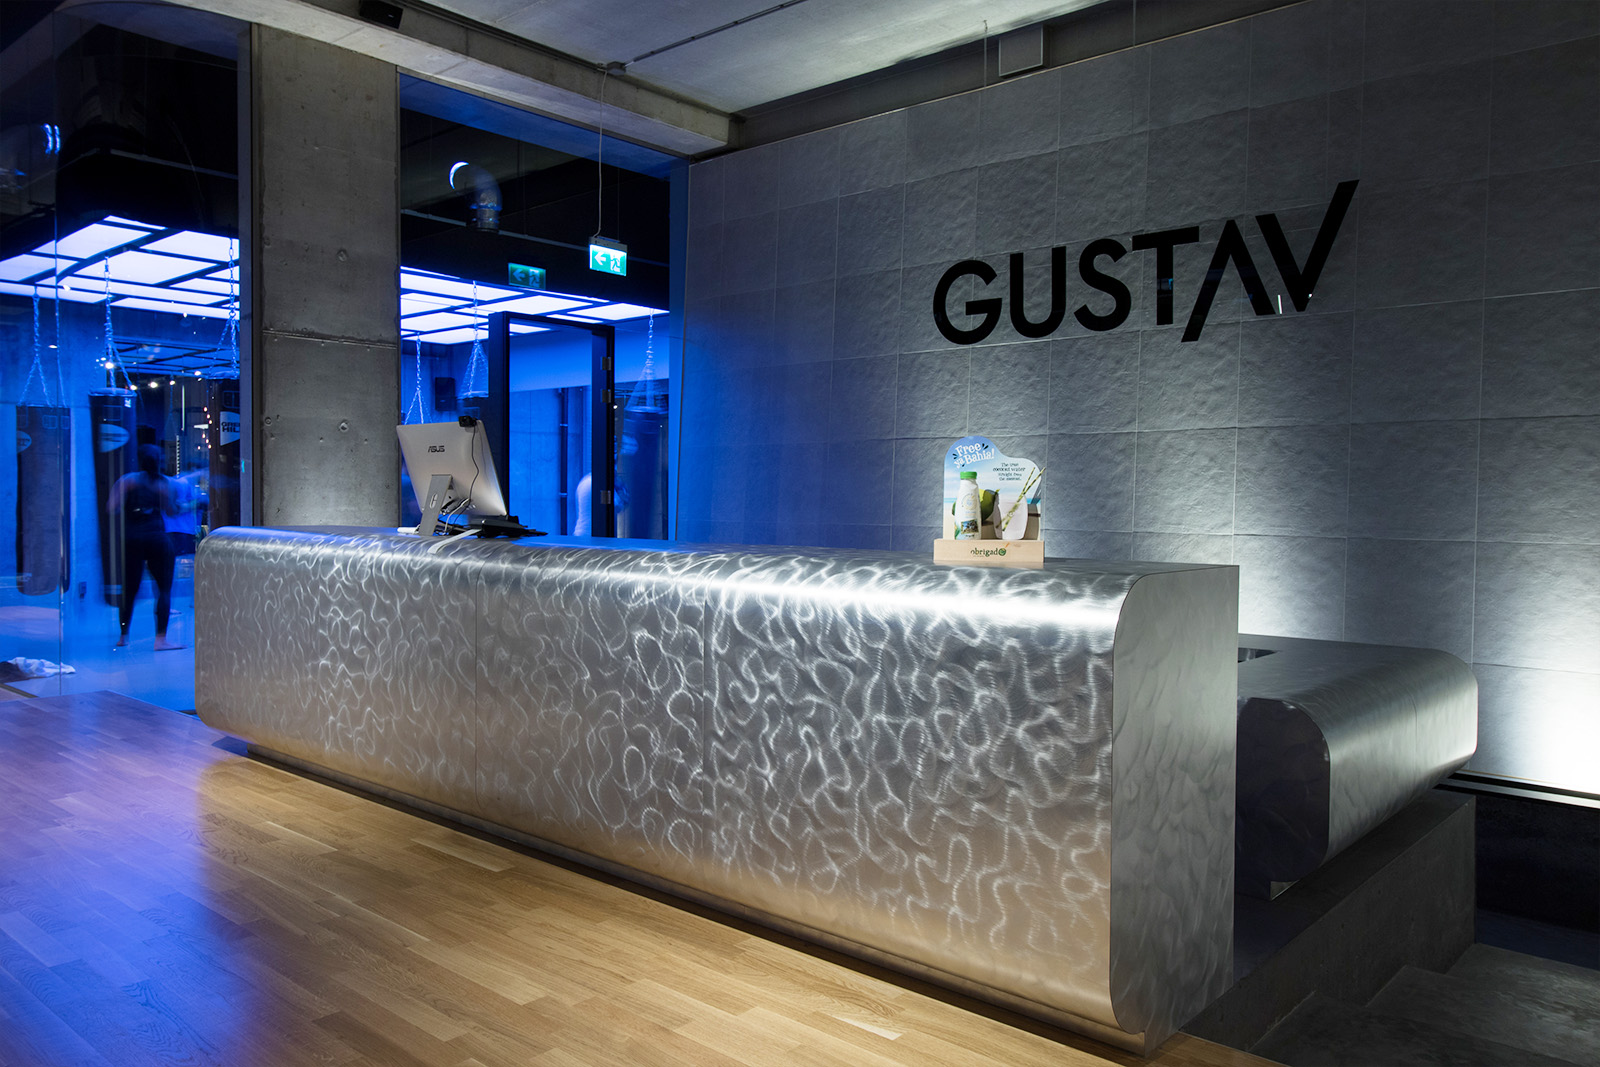 Gustav Gym Amsterdam